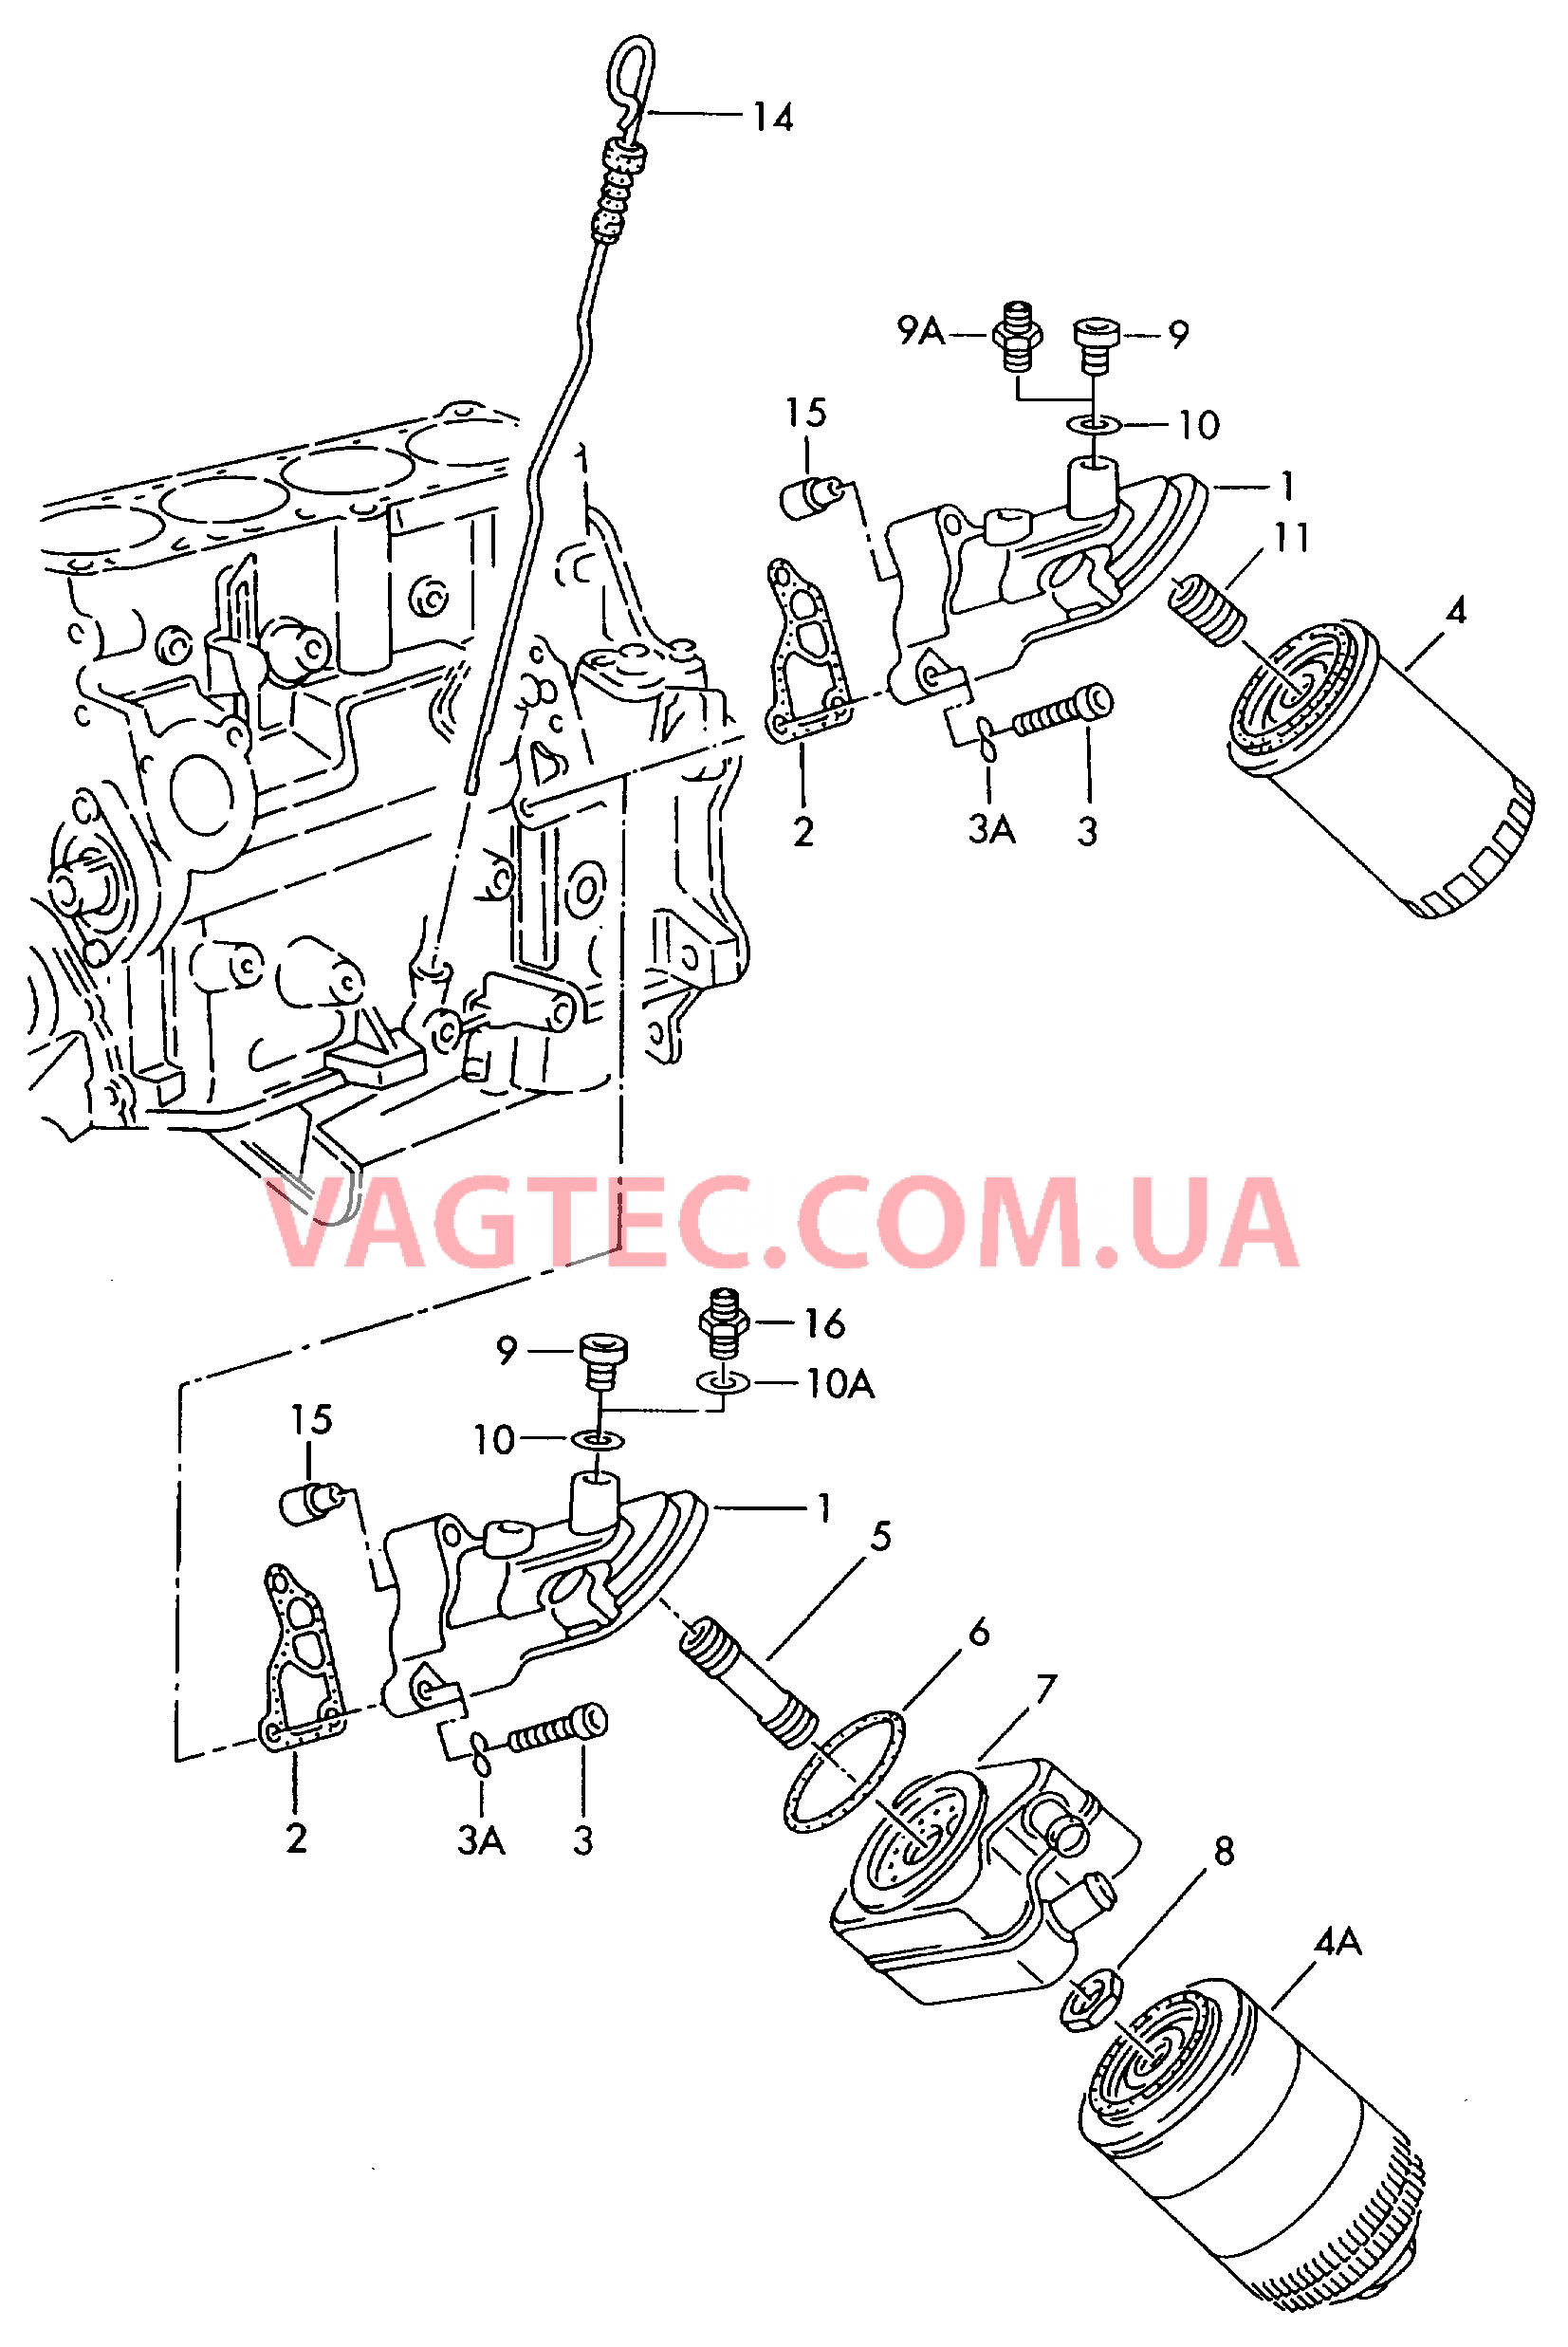 Фильтр, масляный Кронштейн масляного фильтра Маслоизмерительный щуп  для AUDI A4Q 2001